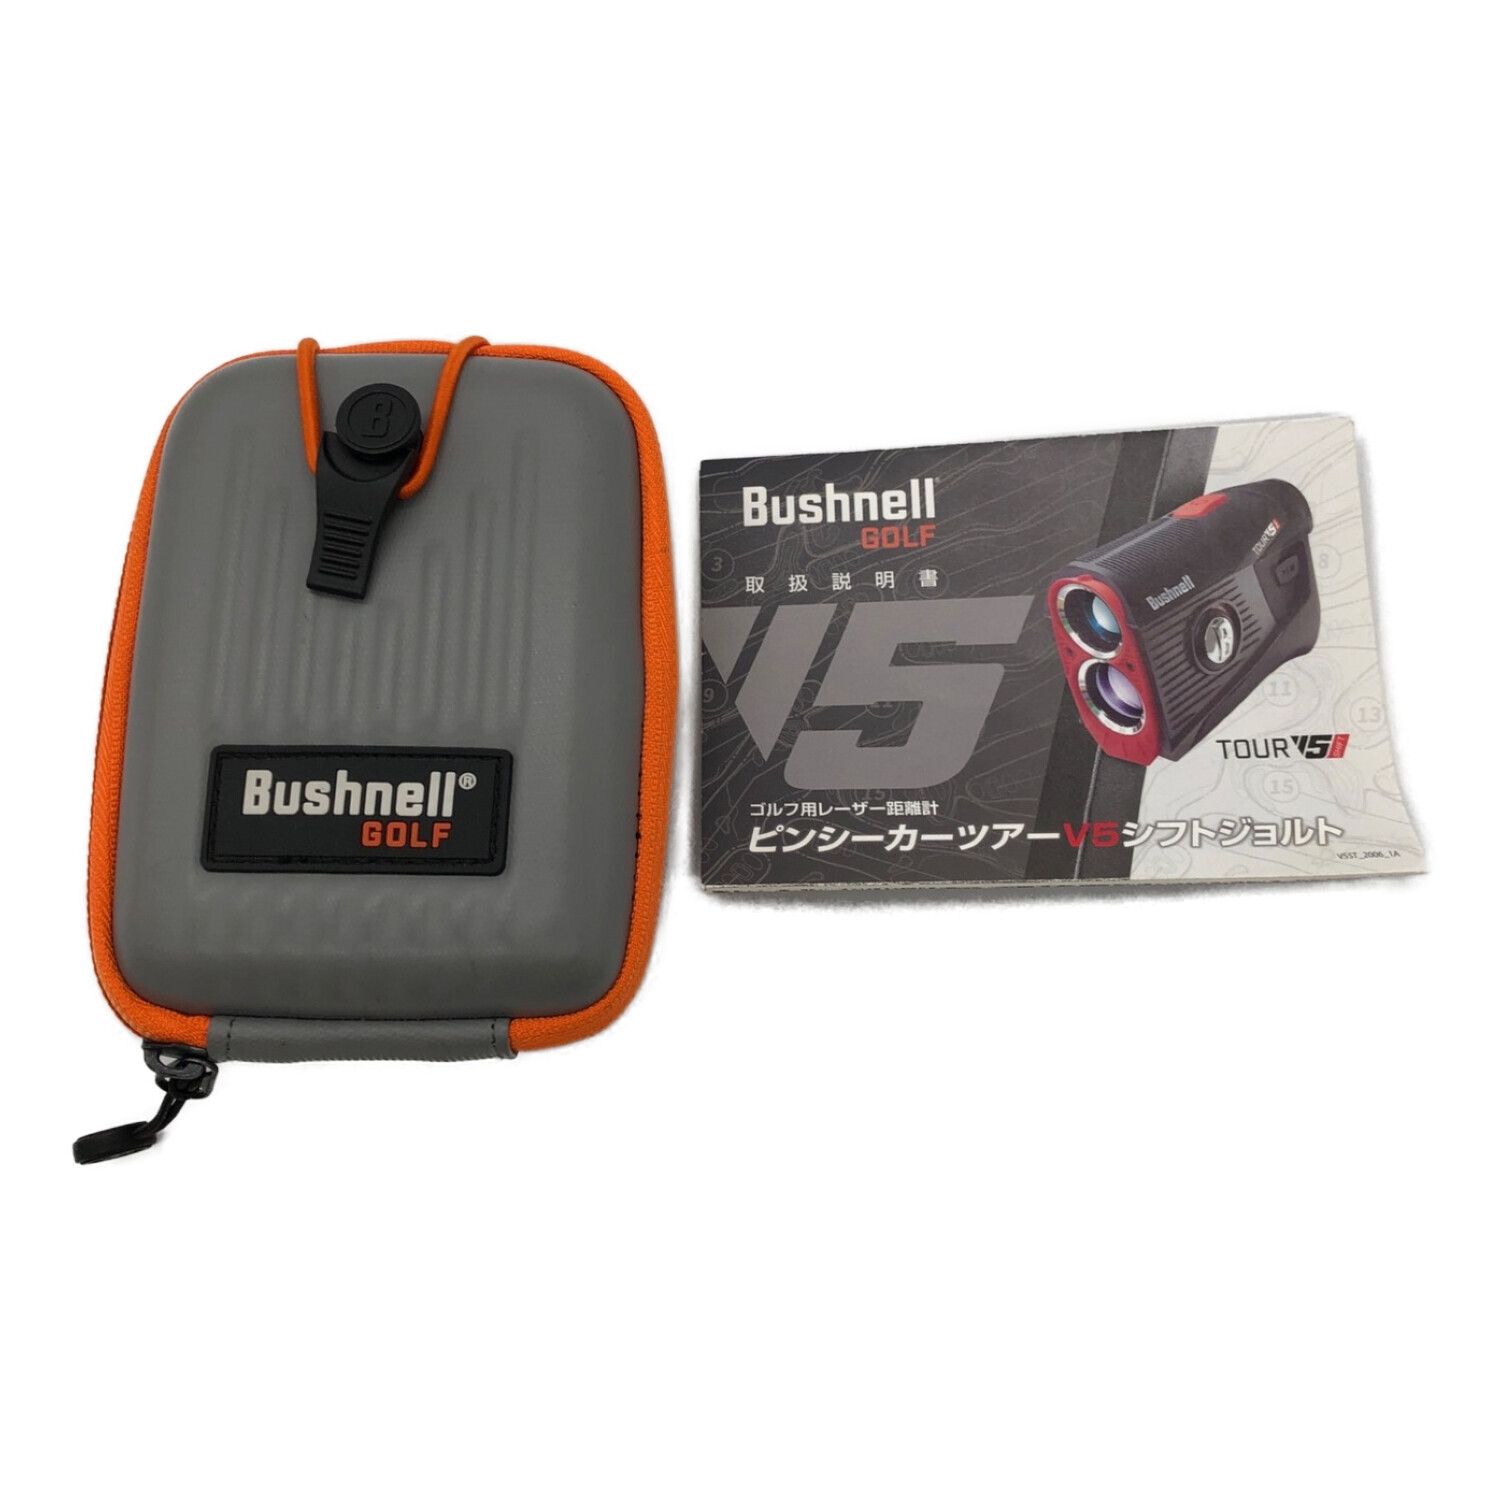 Bushnell (ブッシュネル) ゴルフ距離測定器 測定範囲5~1300ヤード ...